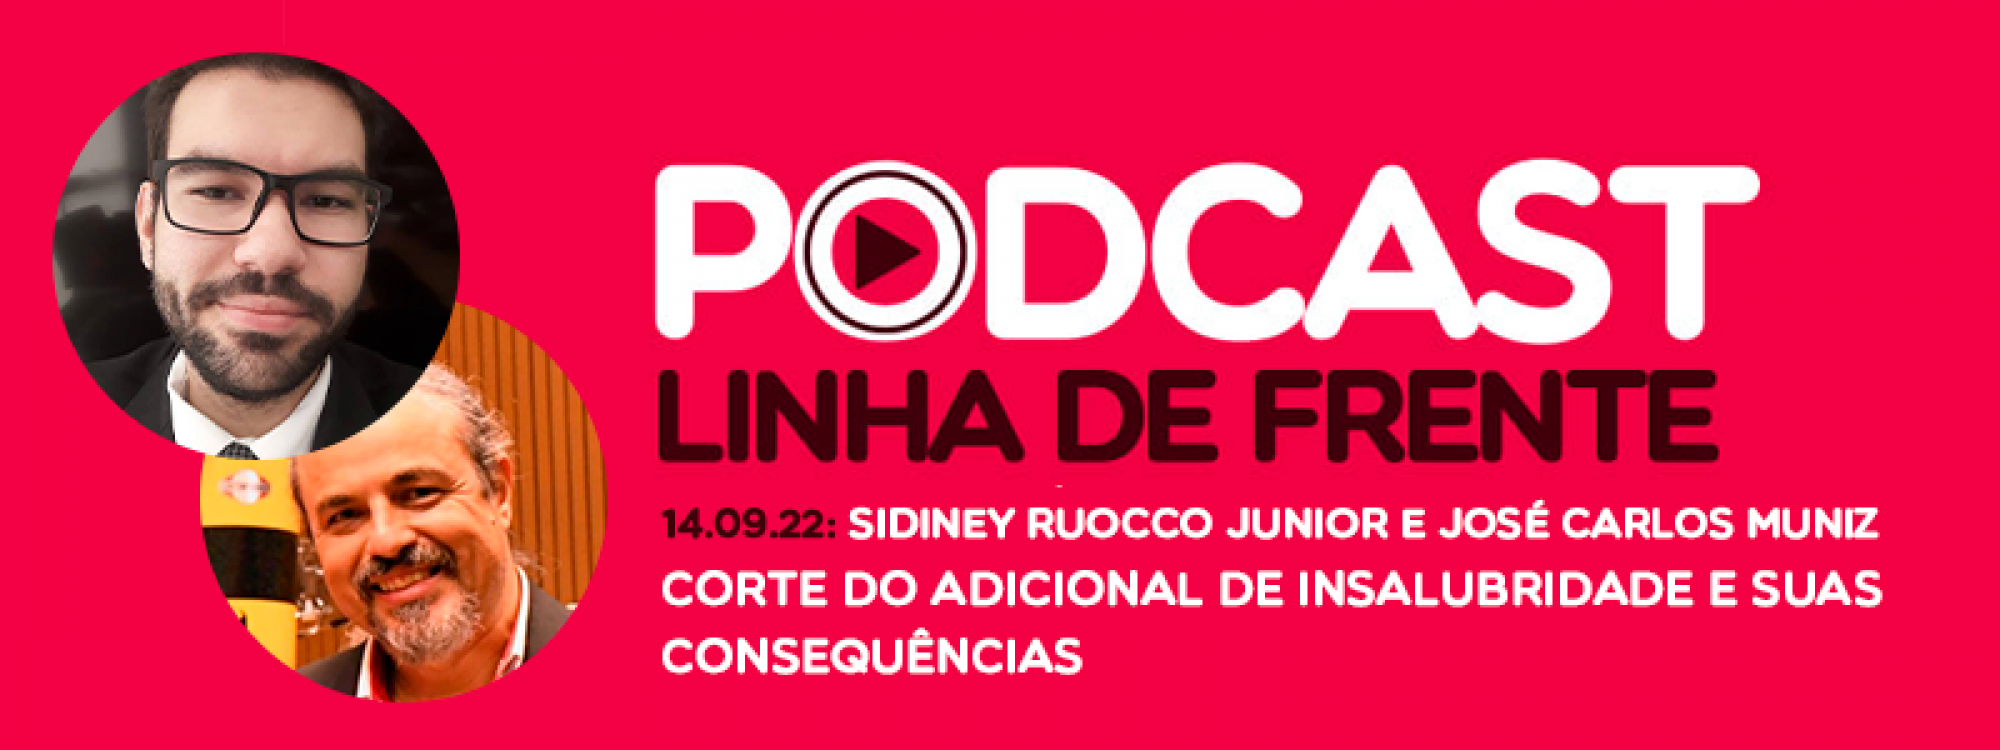 Ouça: Podcast Linha de Frente com Sidiney Ruocco Junior e José Carlos Muniz - Corte do adicional de insalubridade e suas consequências 